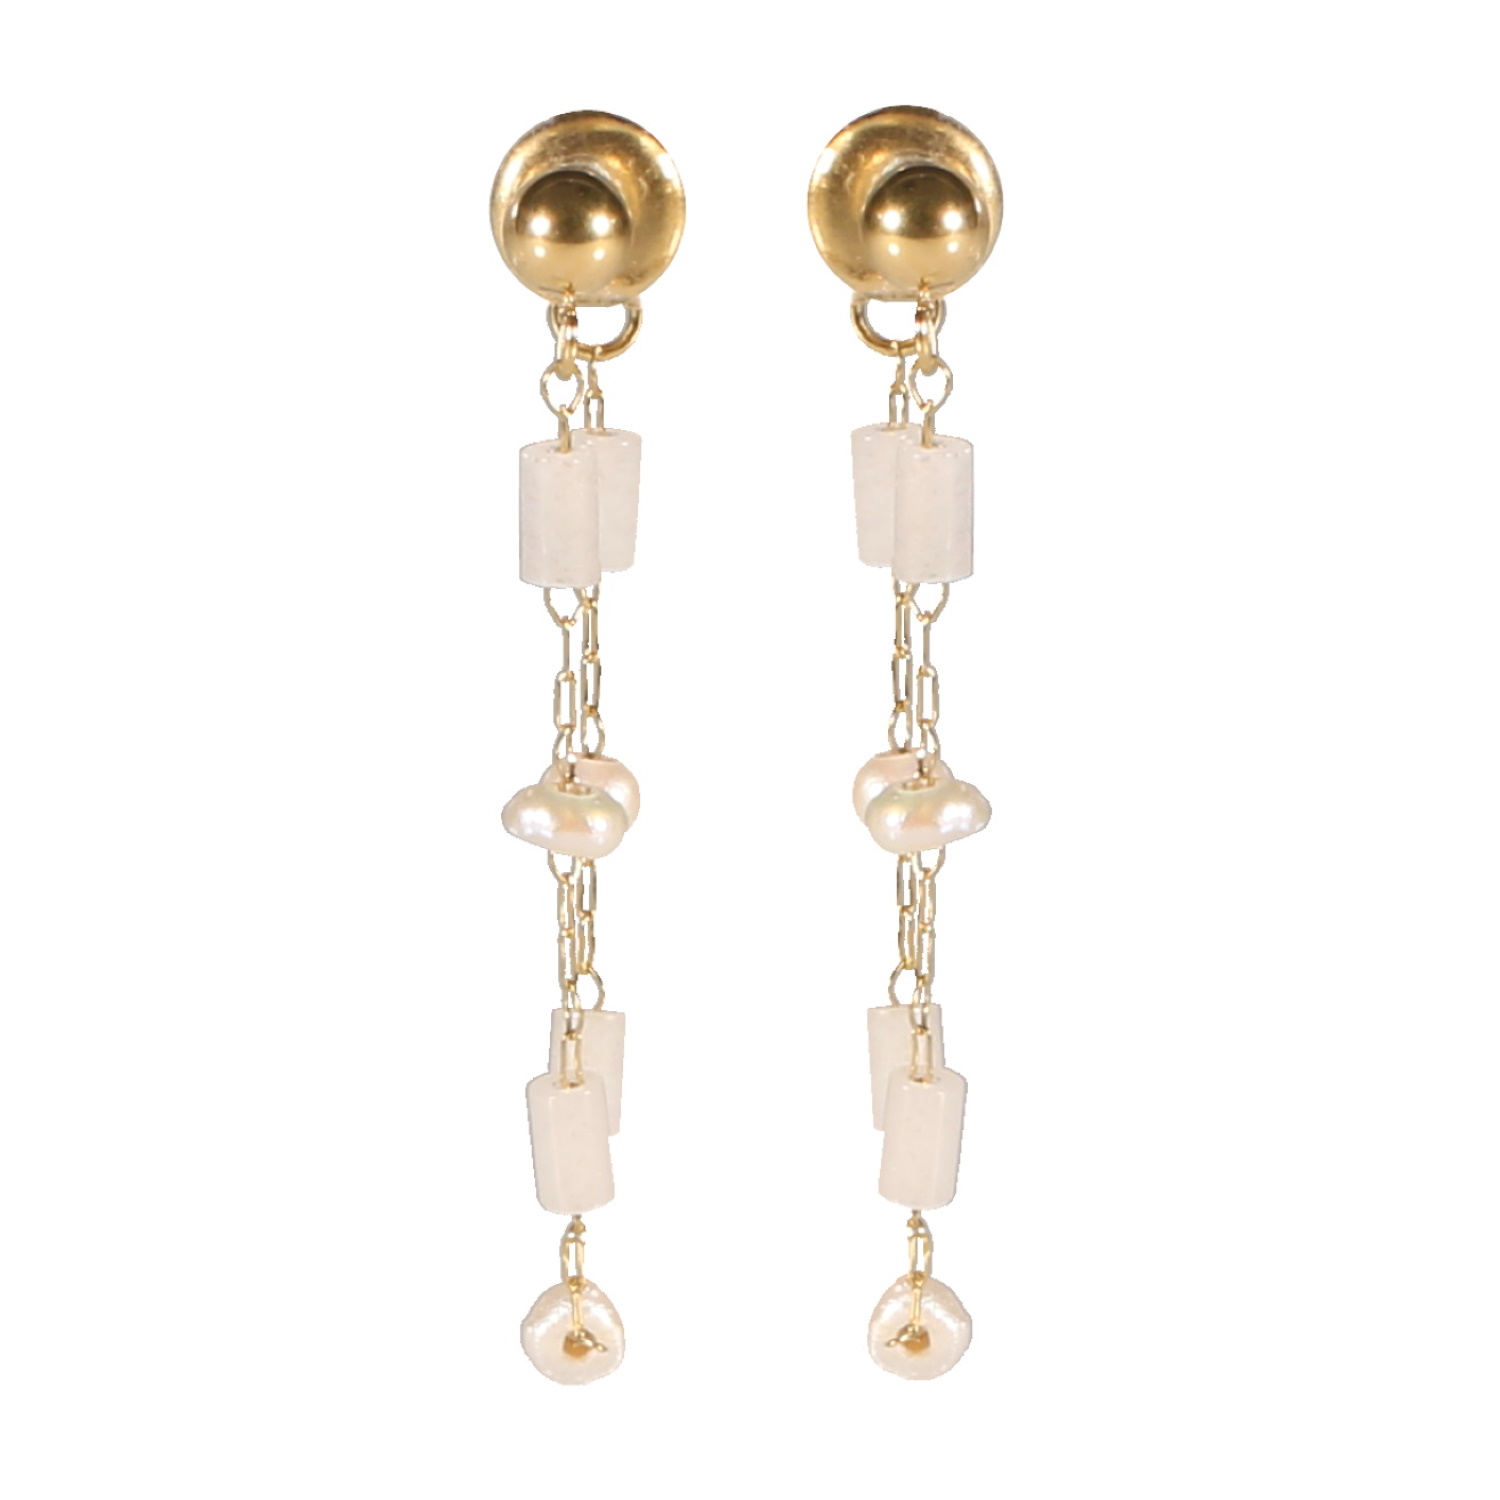 Boucles d'oreilles pendantes composées d'une puce boule et d'une chaîne en acier doré, des perles de nacre et des perles tubes de couleur blanche. Pendantes Perle  Adolescent Adulte Femme Fille Indémodable 